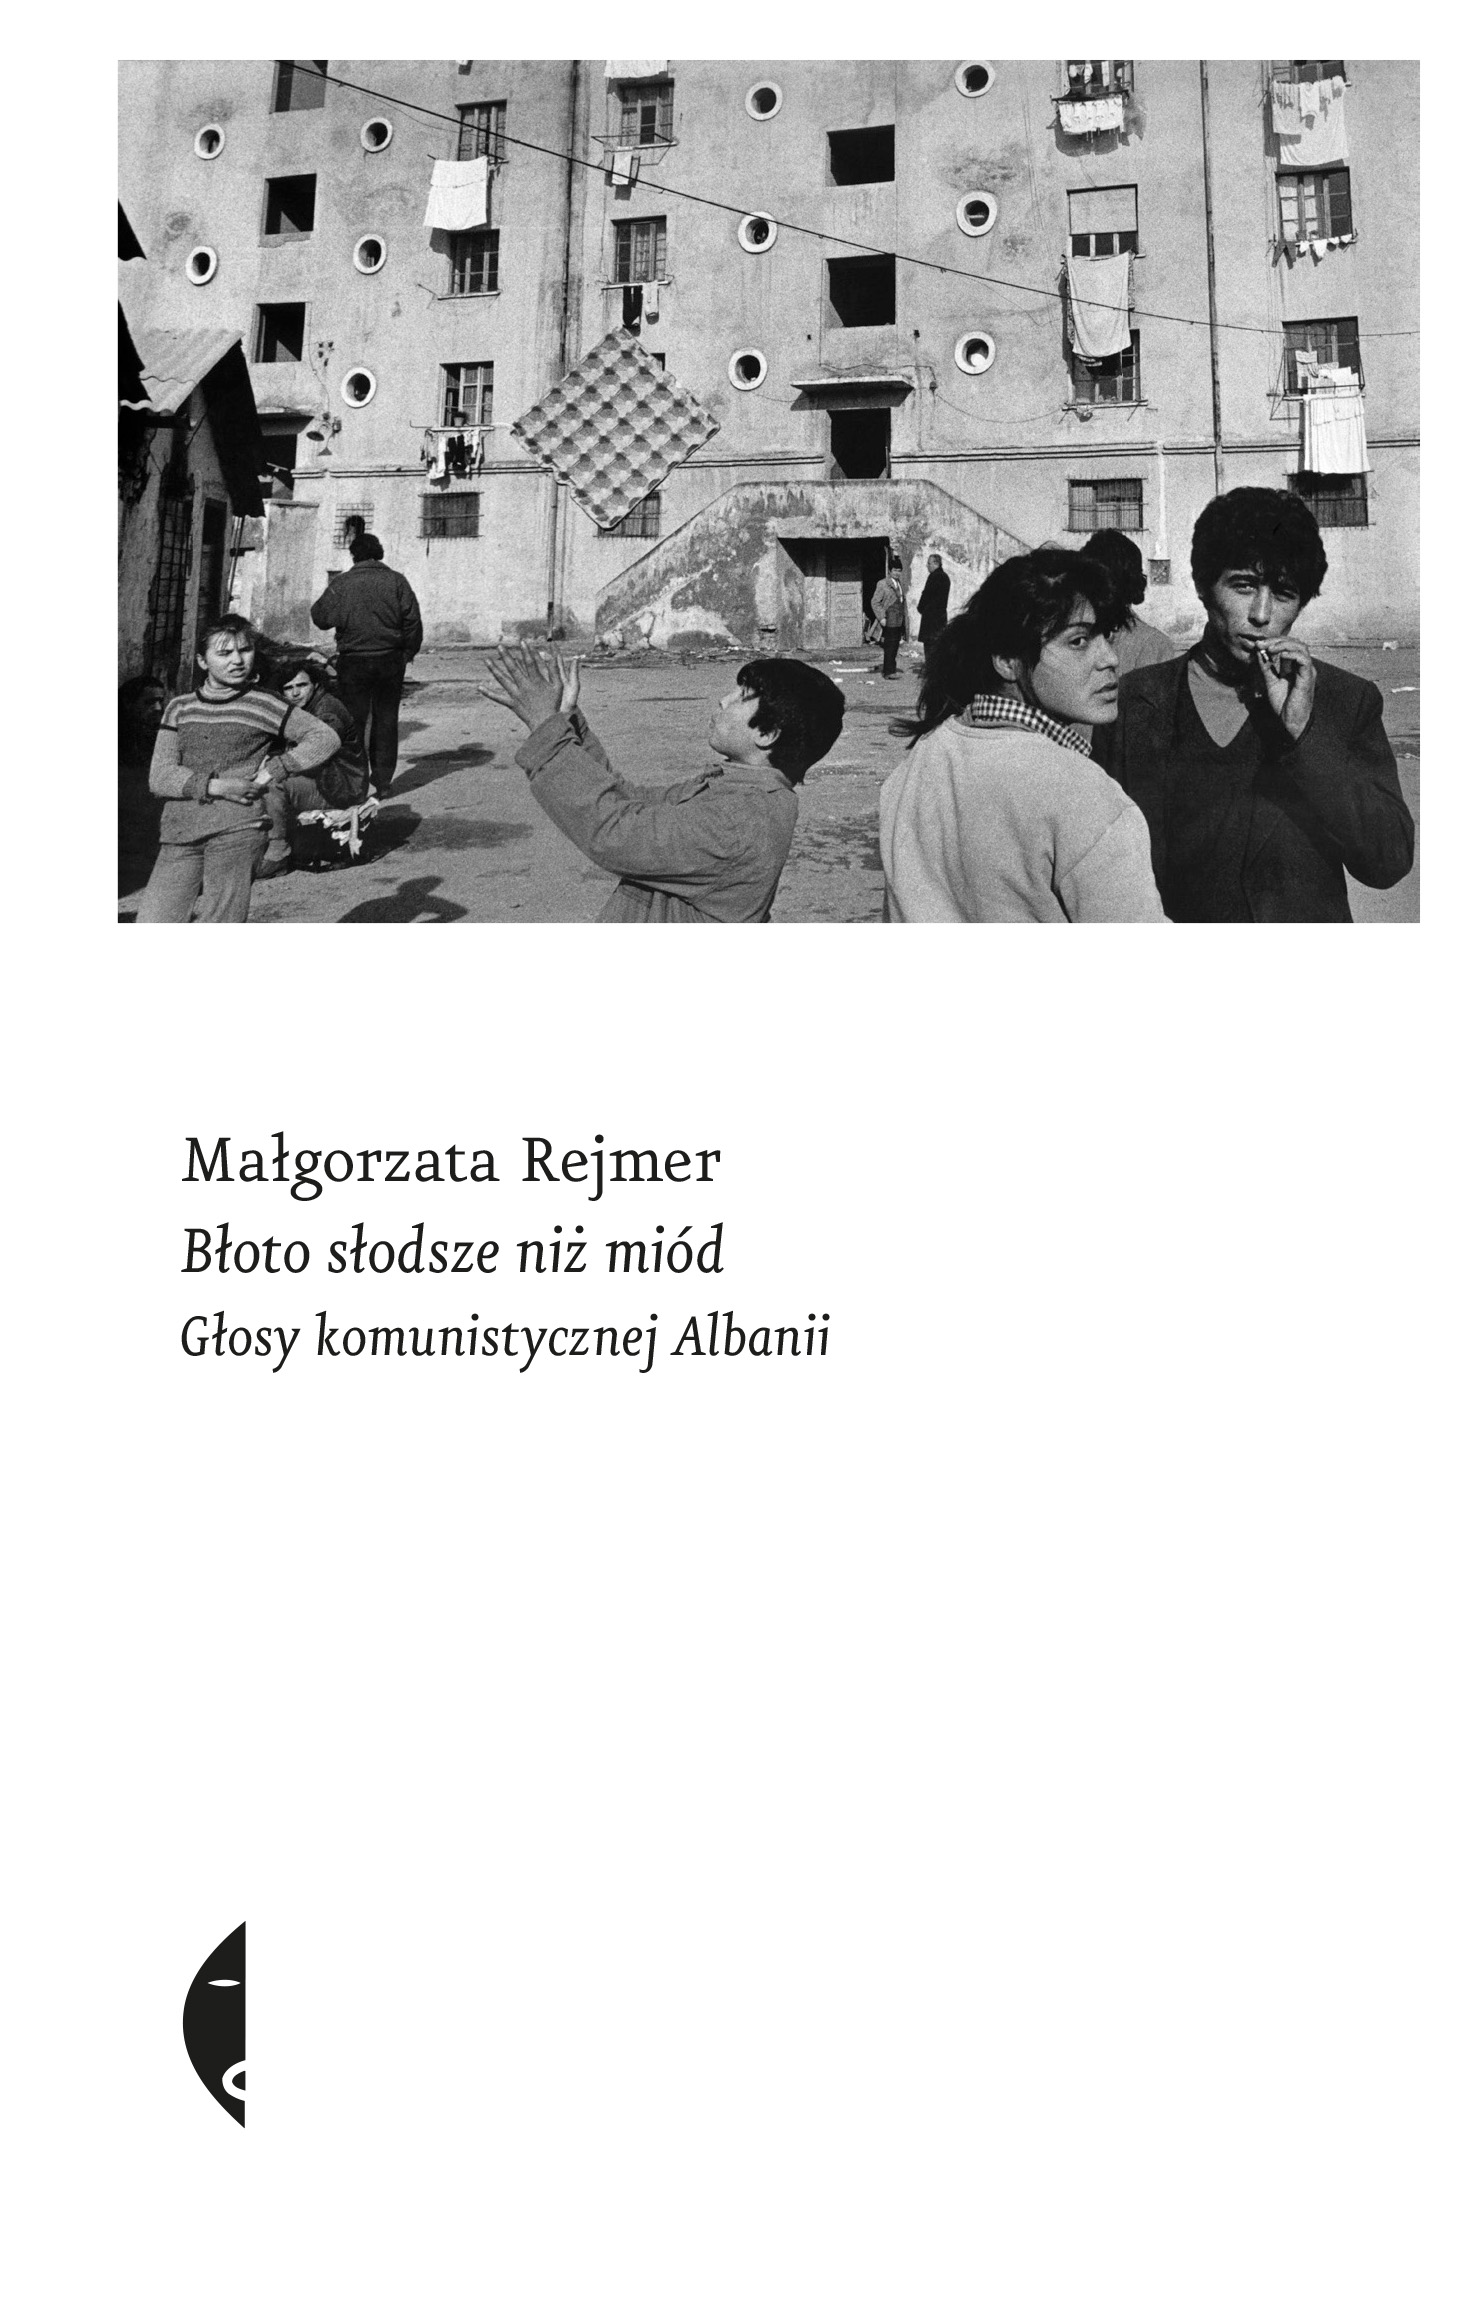 okładka książki błoto słodsze niż miód głosy komunistycznej albanii